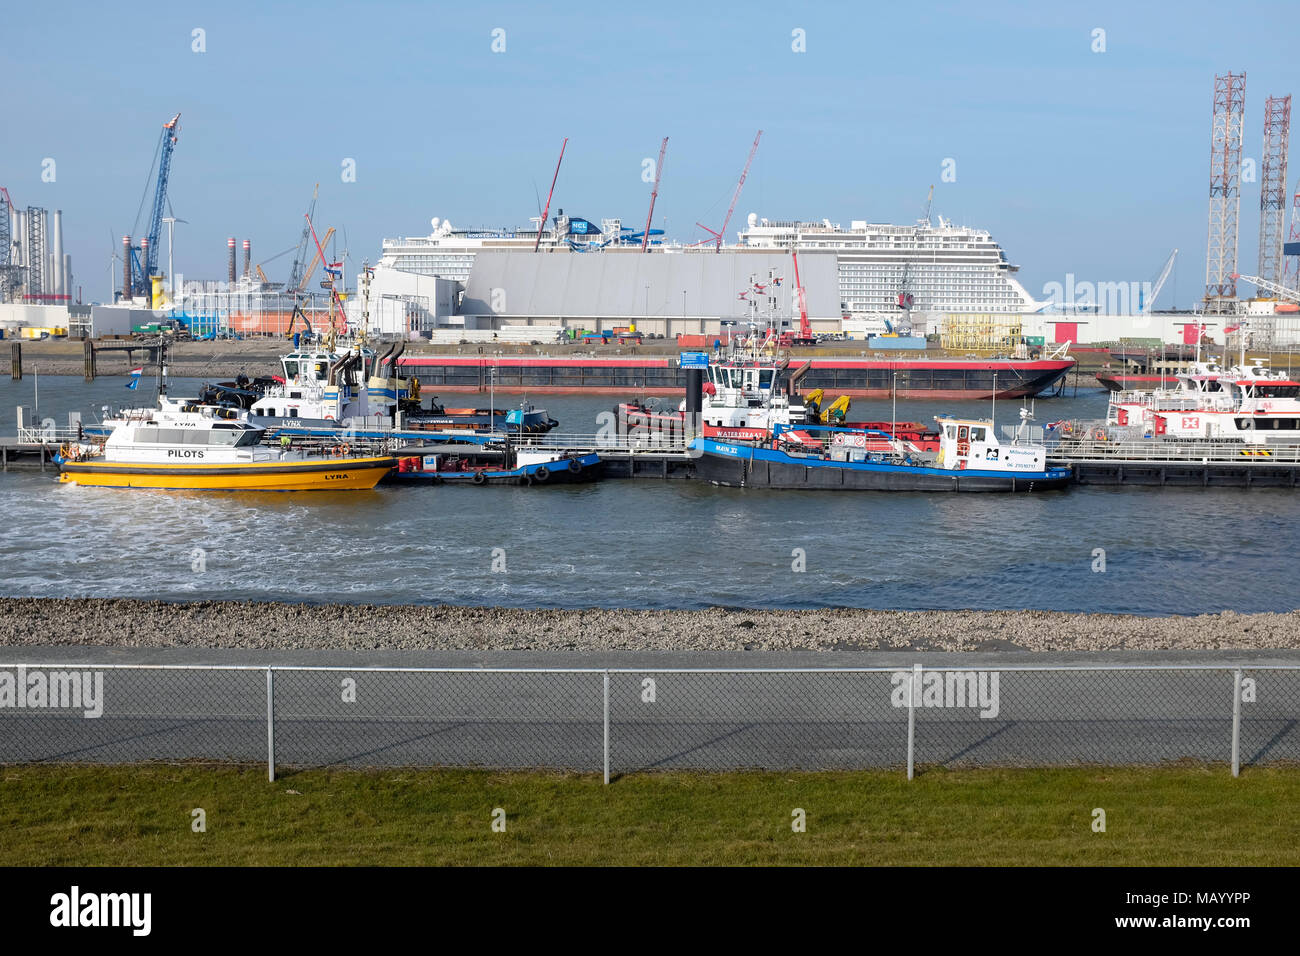 Norwegische Bliss Kreuzfahrtschiff mit der endgültigen Konstruktion arbeitet im Hafen, in Eemshaven, Niederlande. Stockfoto